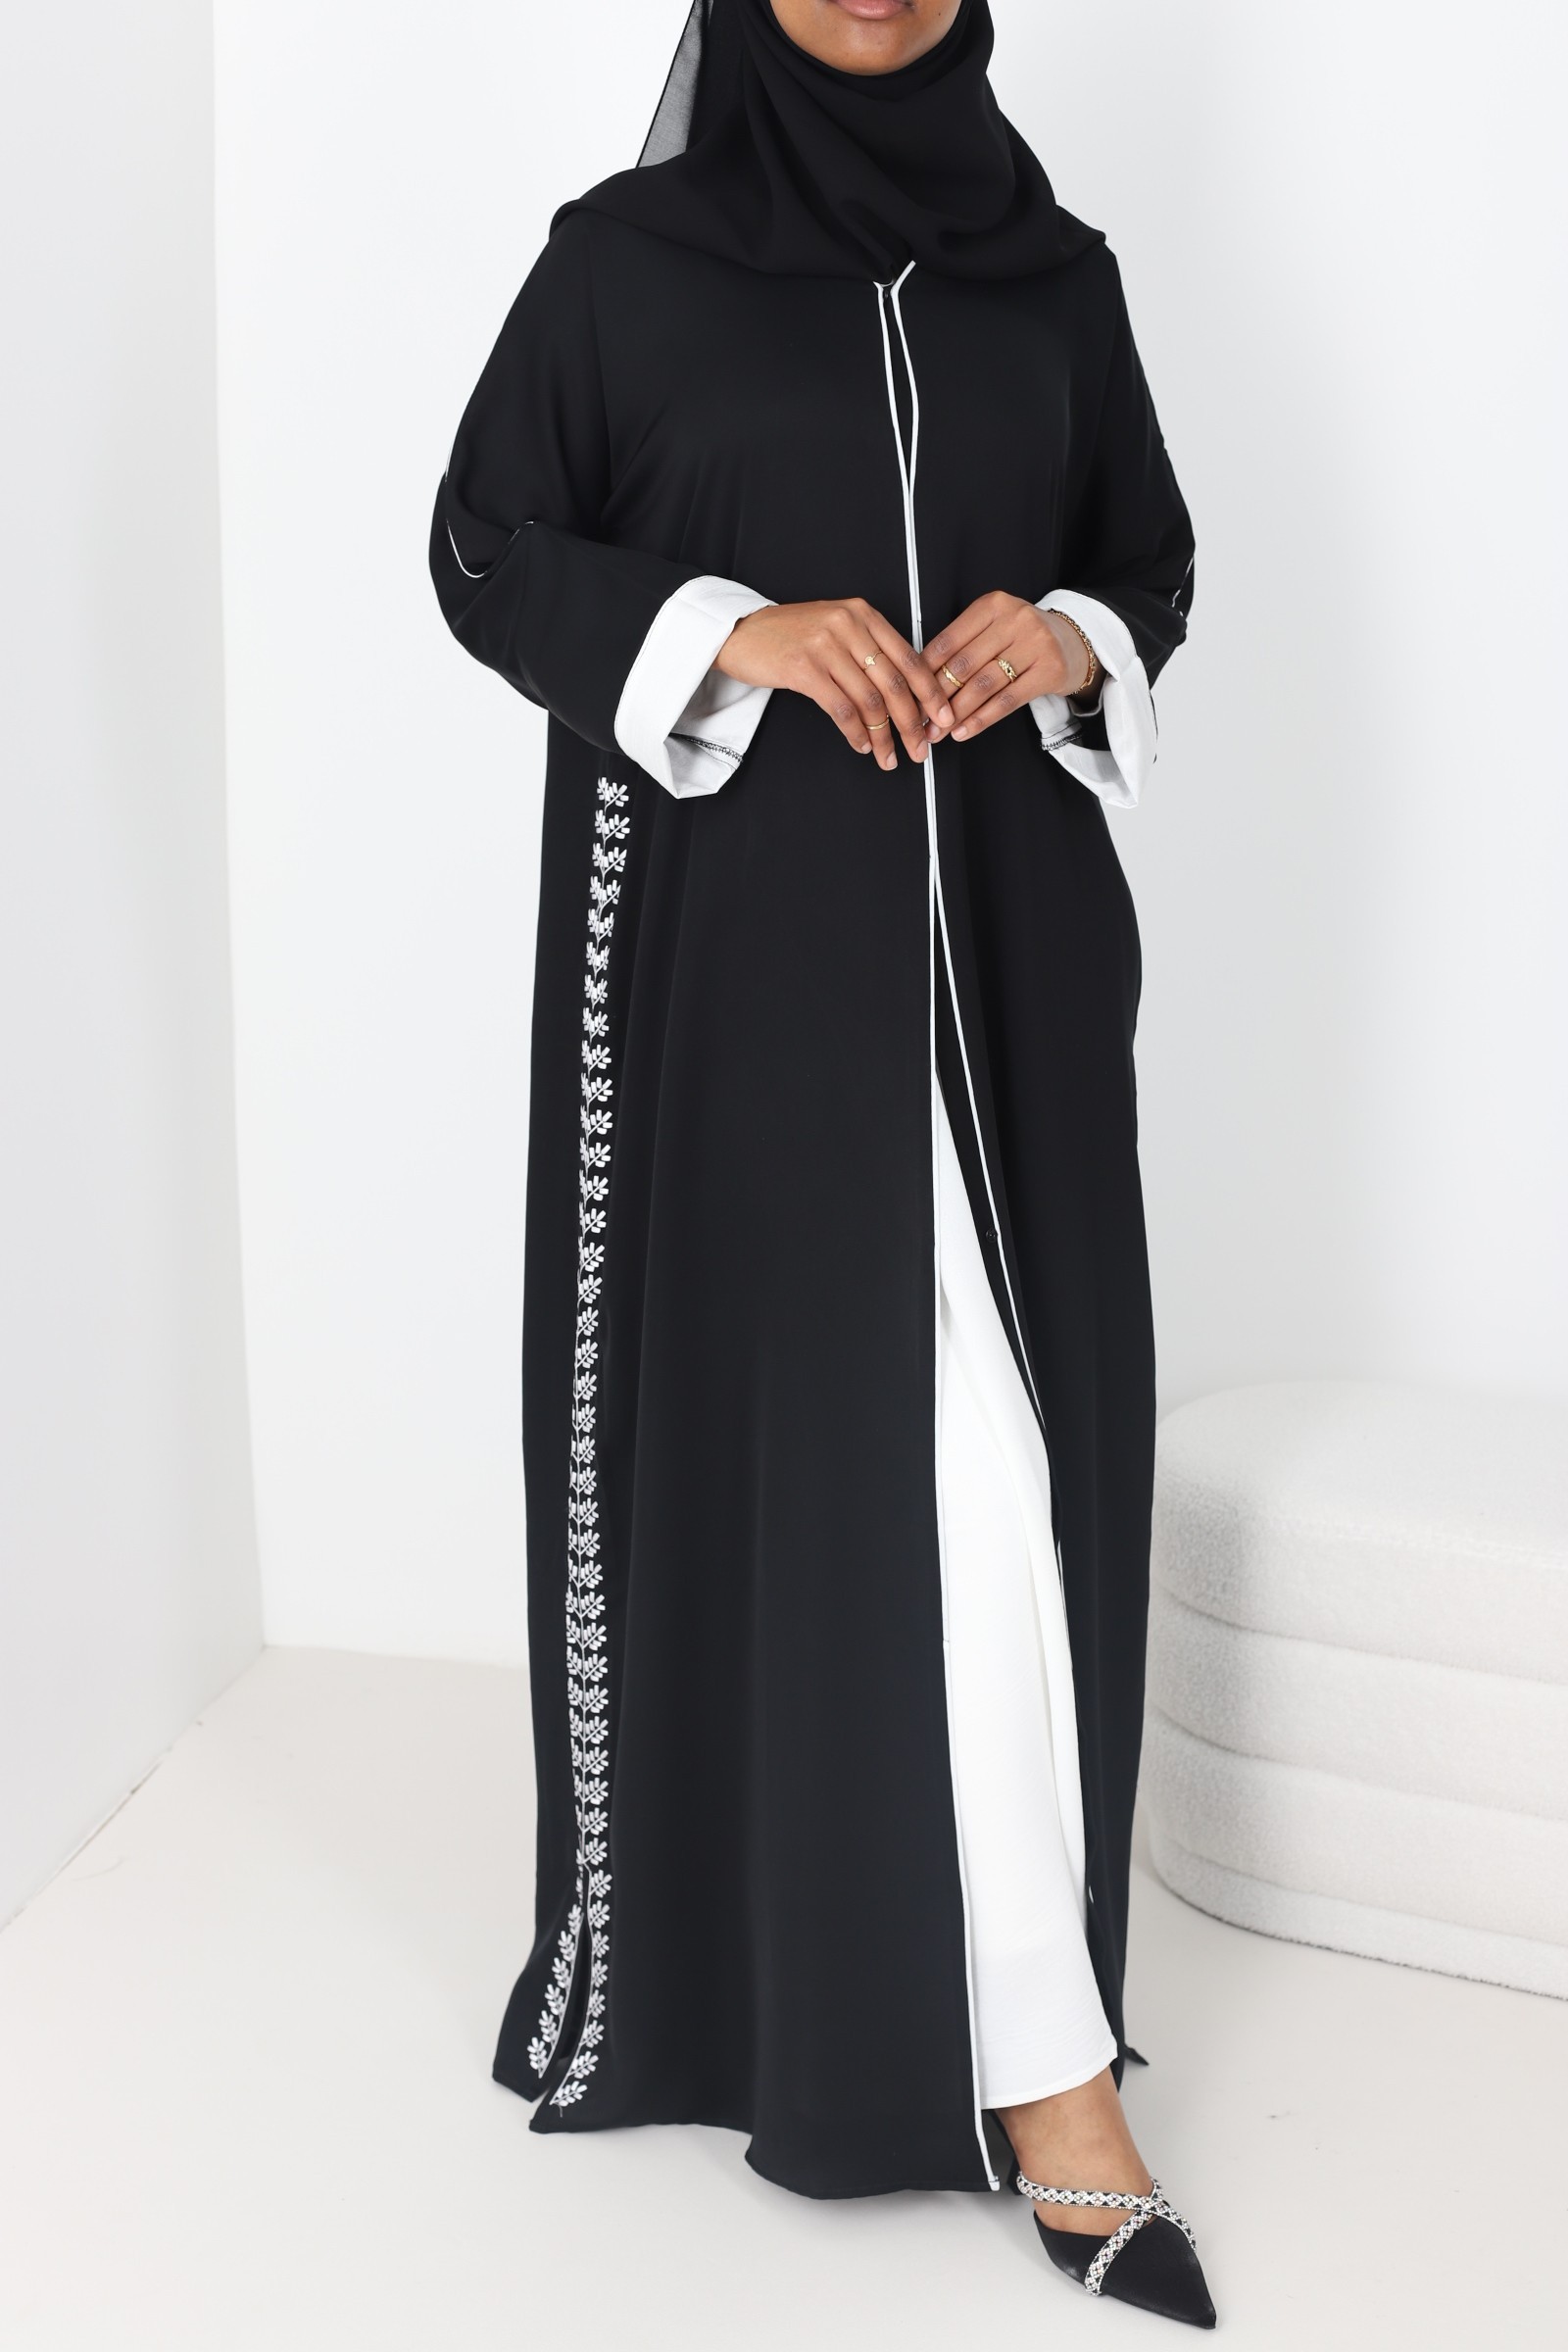 Abaya Dubaï Kylia noir et blanc